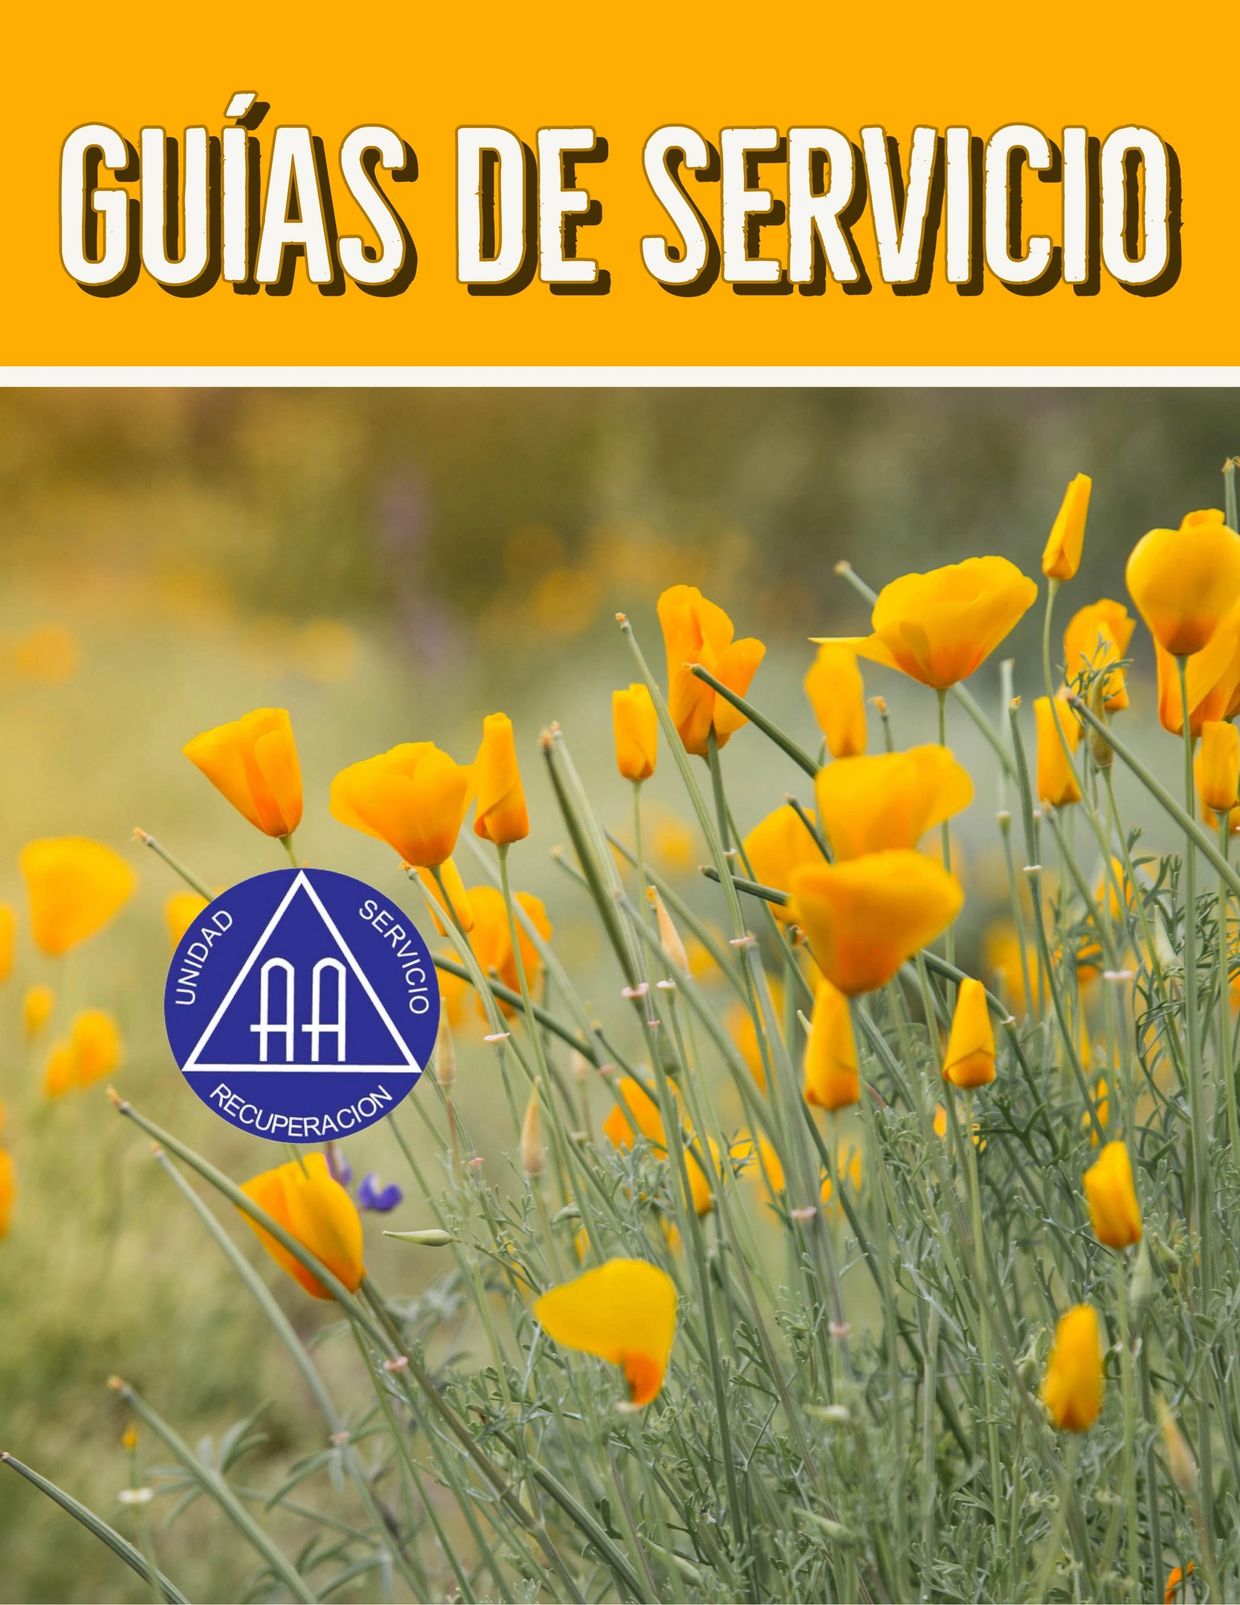 Guías de Servicio de la Oficina de Servicios Generales (OSG) de Alcohólicos Anónimos (AA).